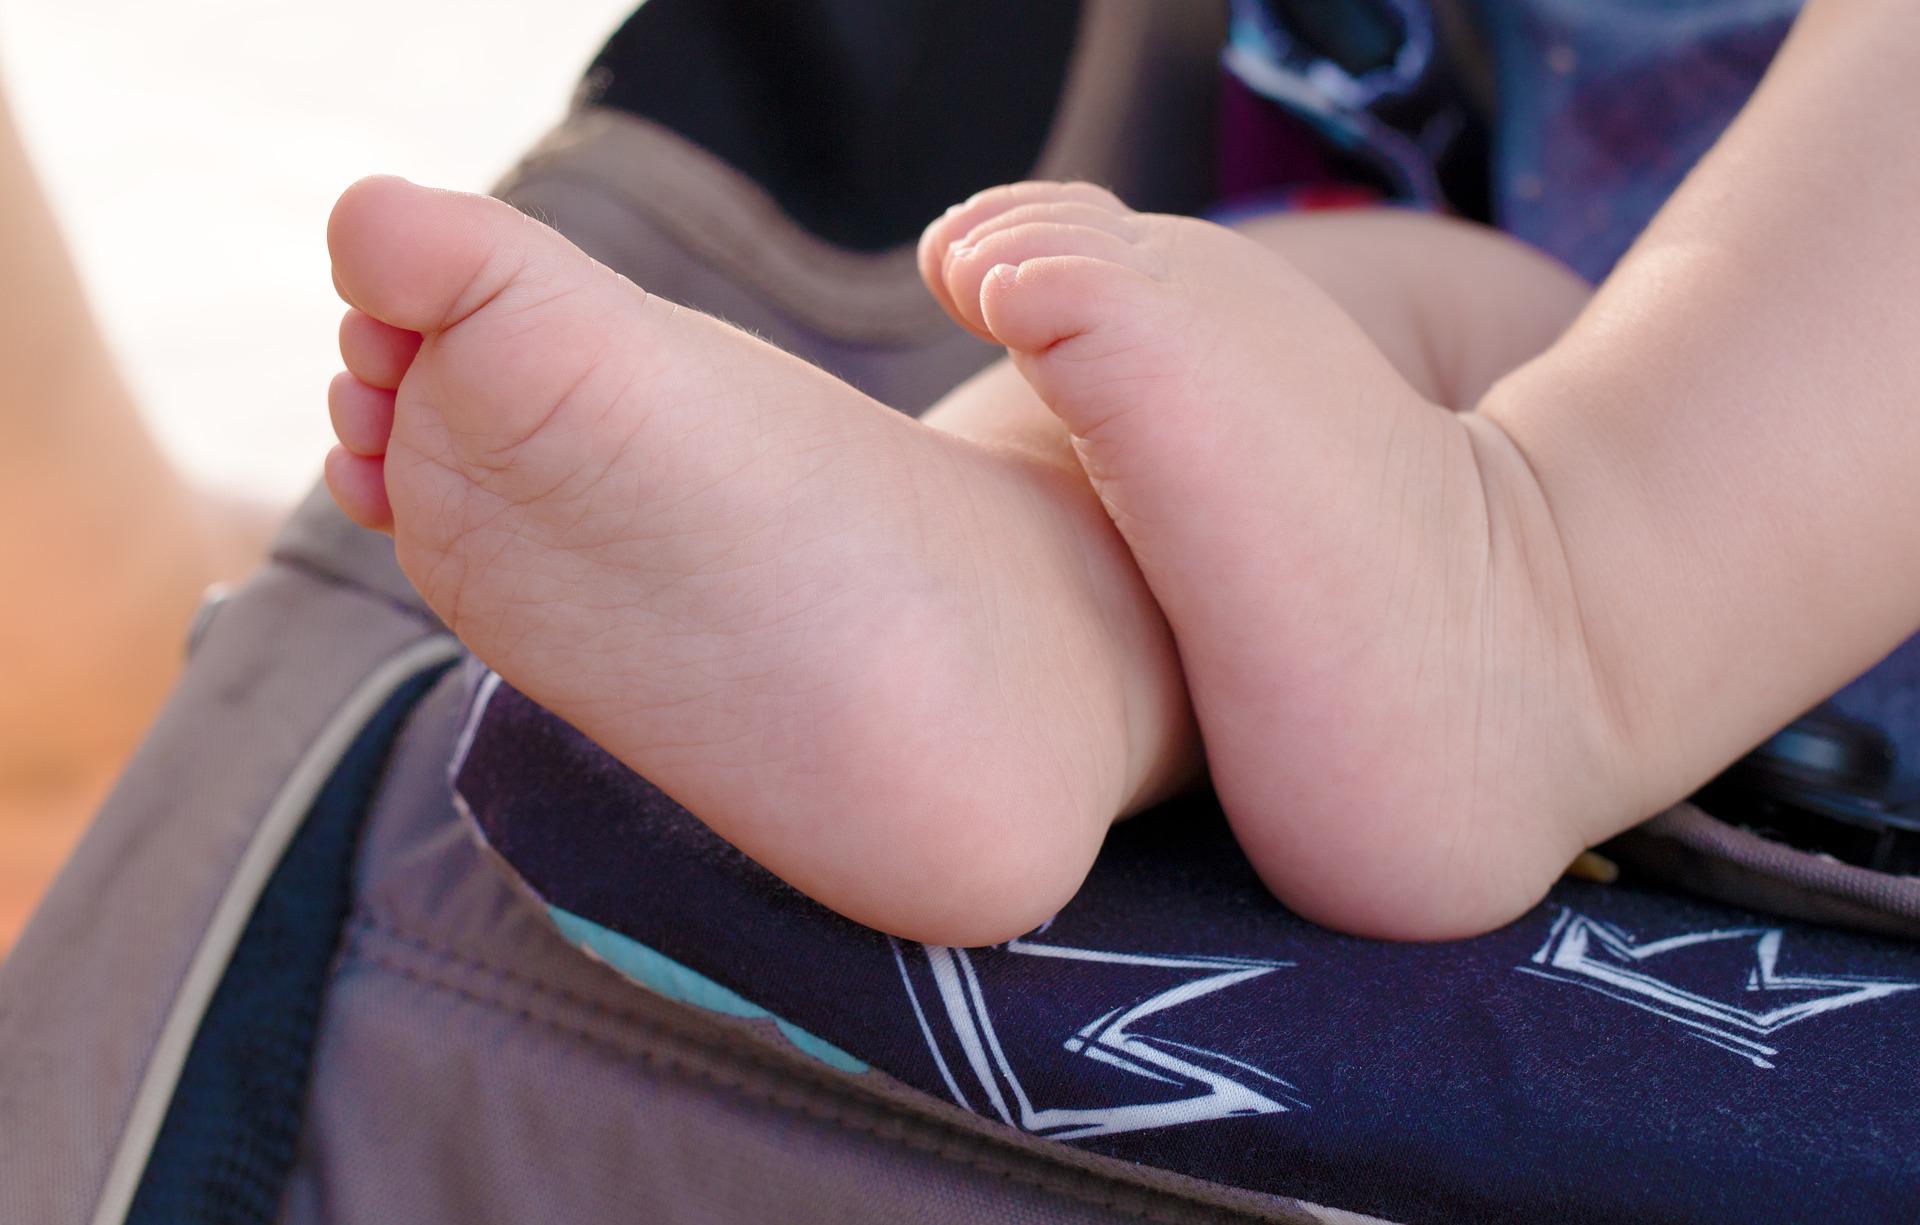 Maternidade de bonecas faz campanha de adoção de bebês hiper